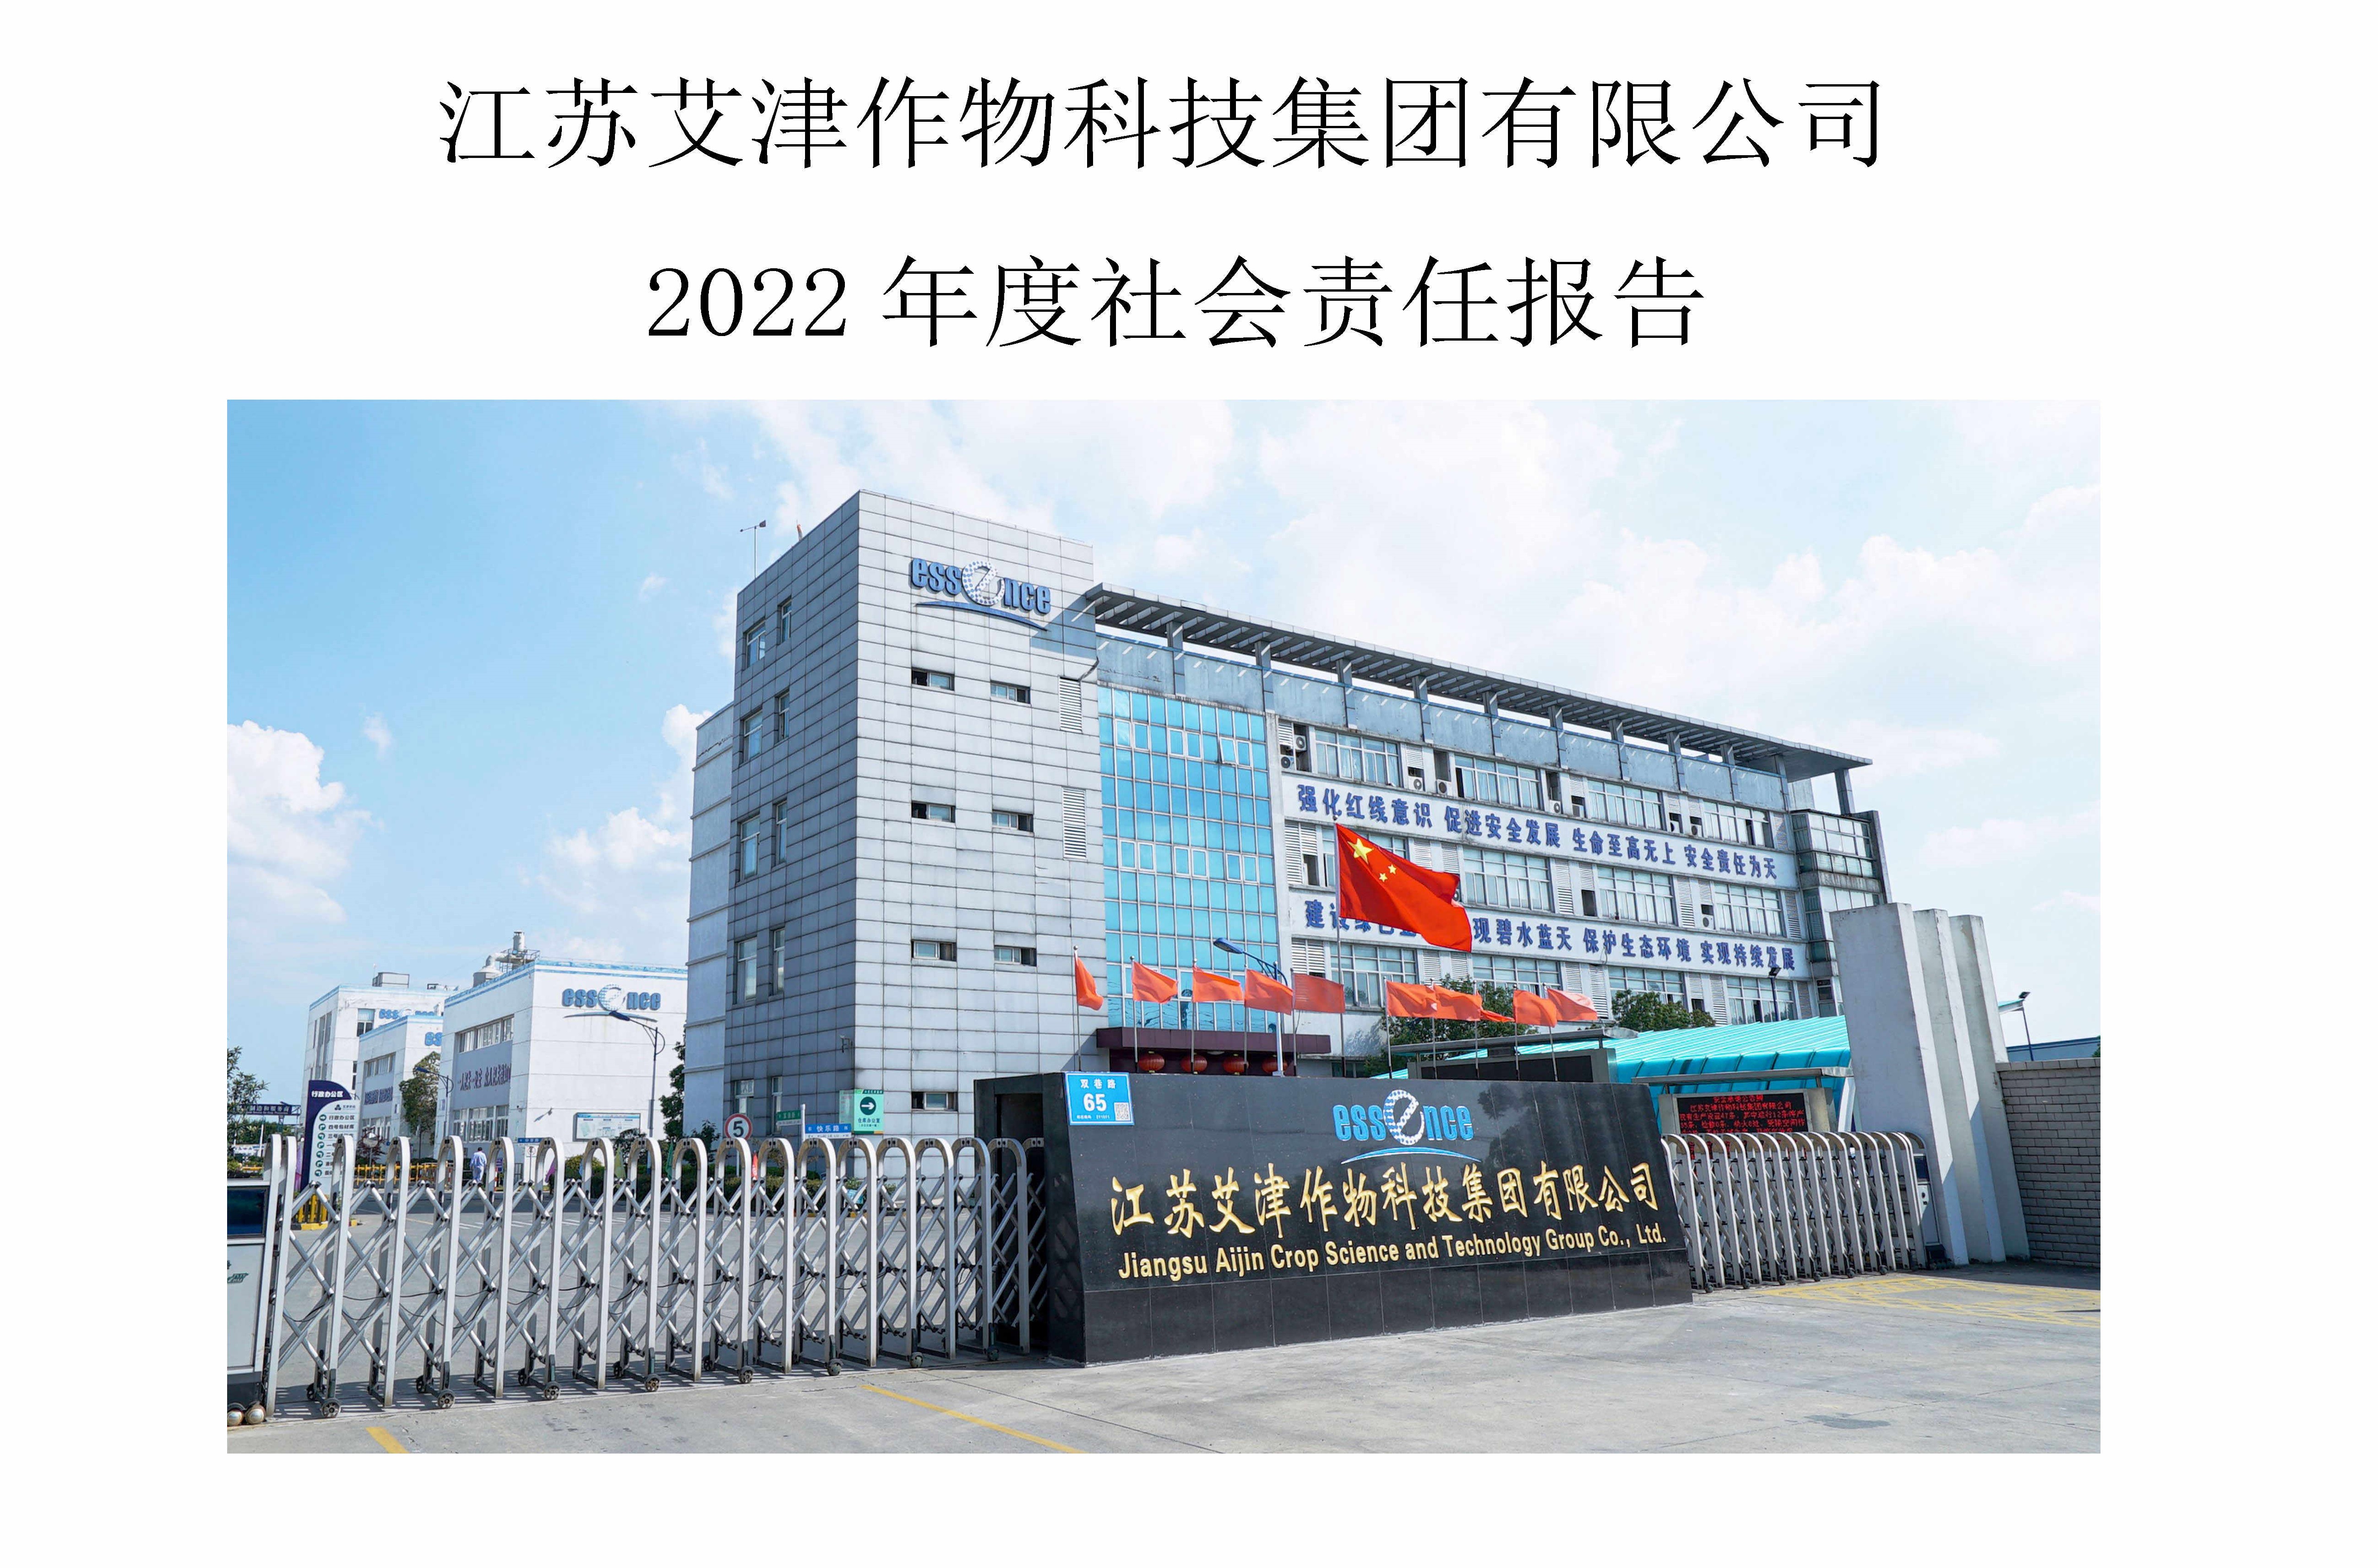 江苏艾津作物科技集团有限公司2022年度社会责任报告